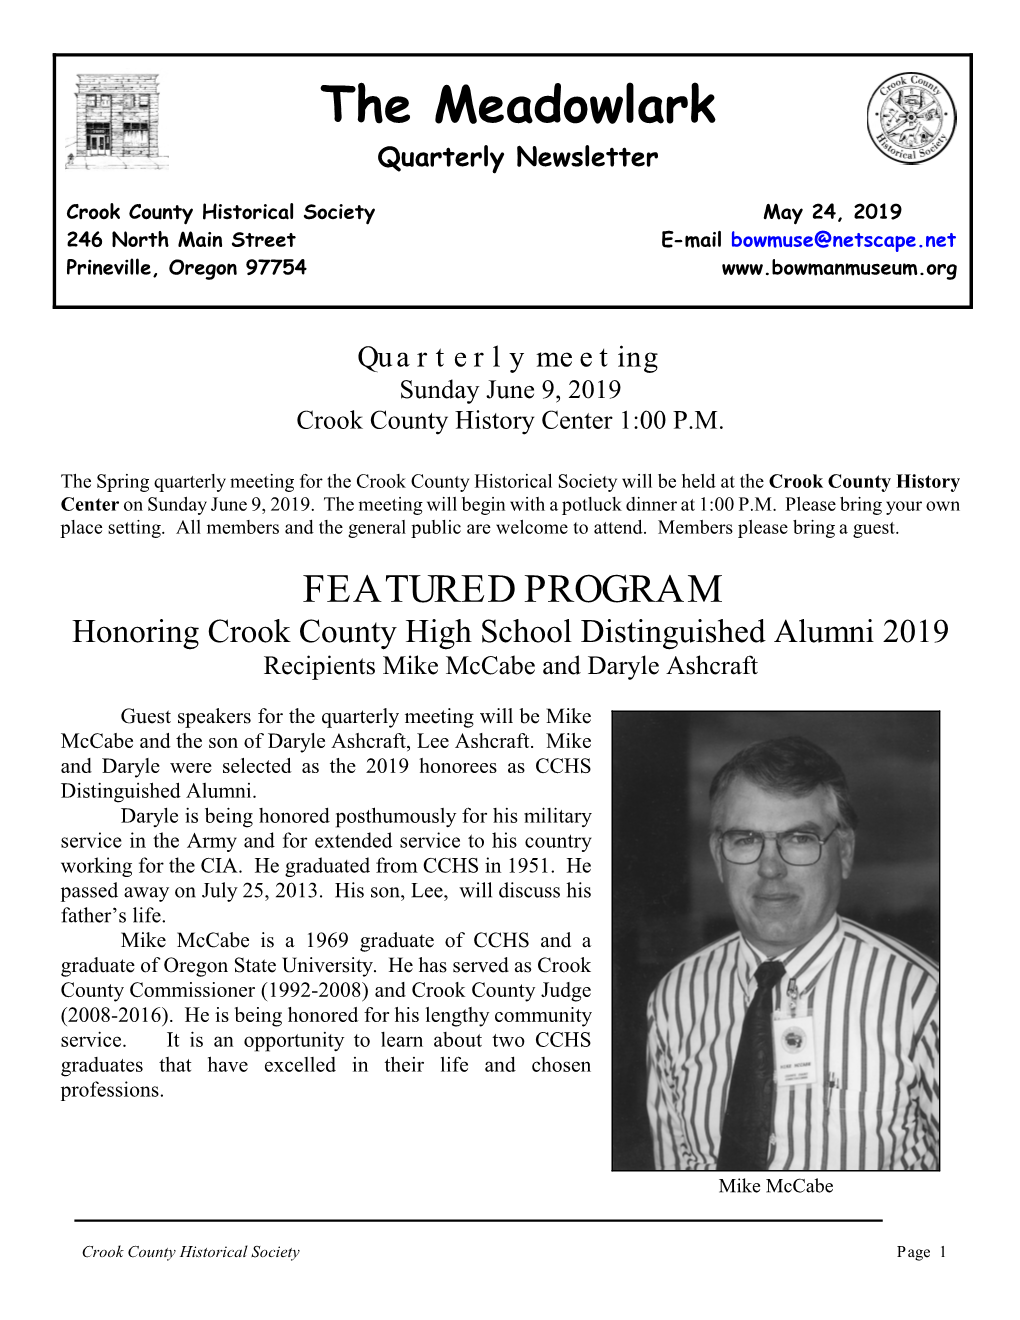 The Meadowlark Quarterly Newsletter